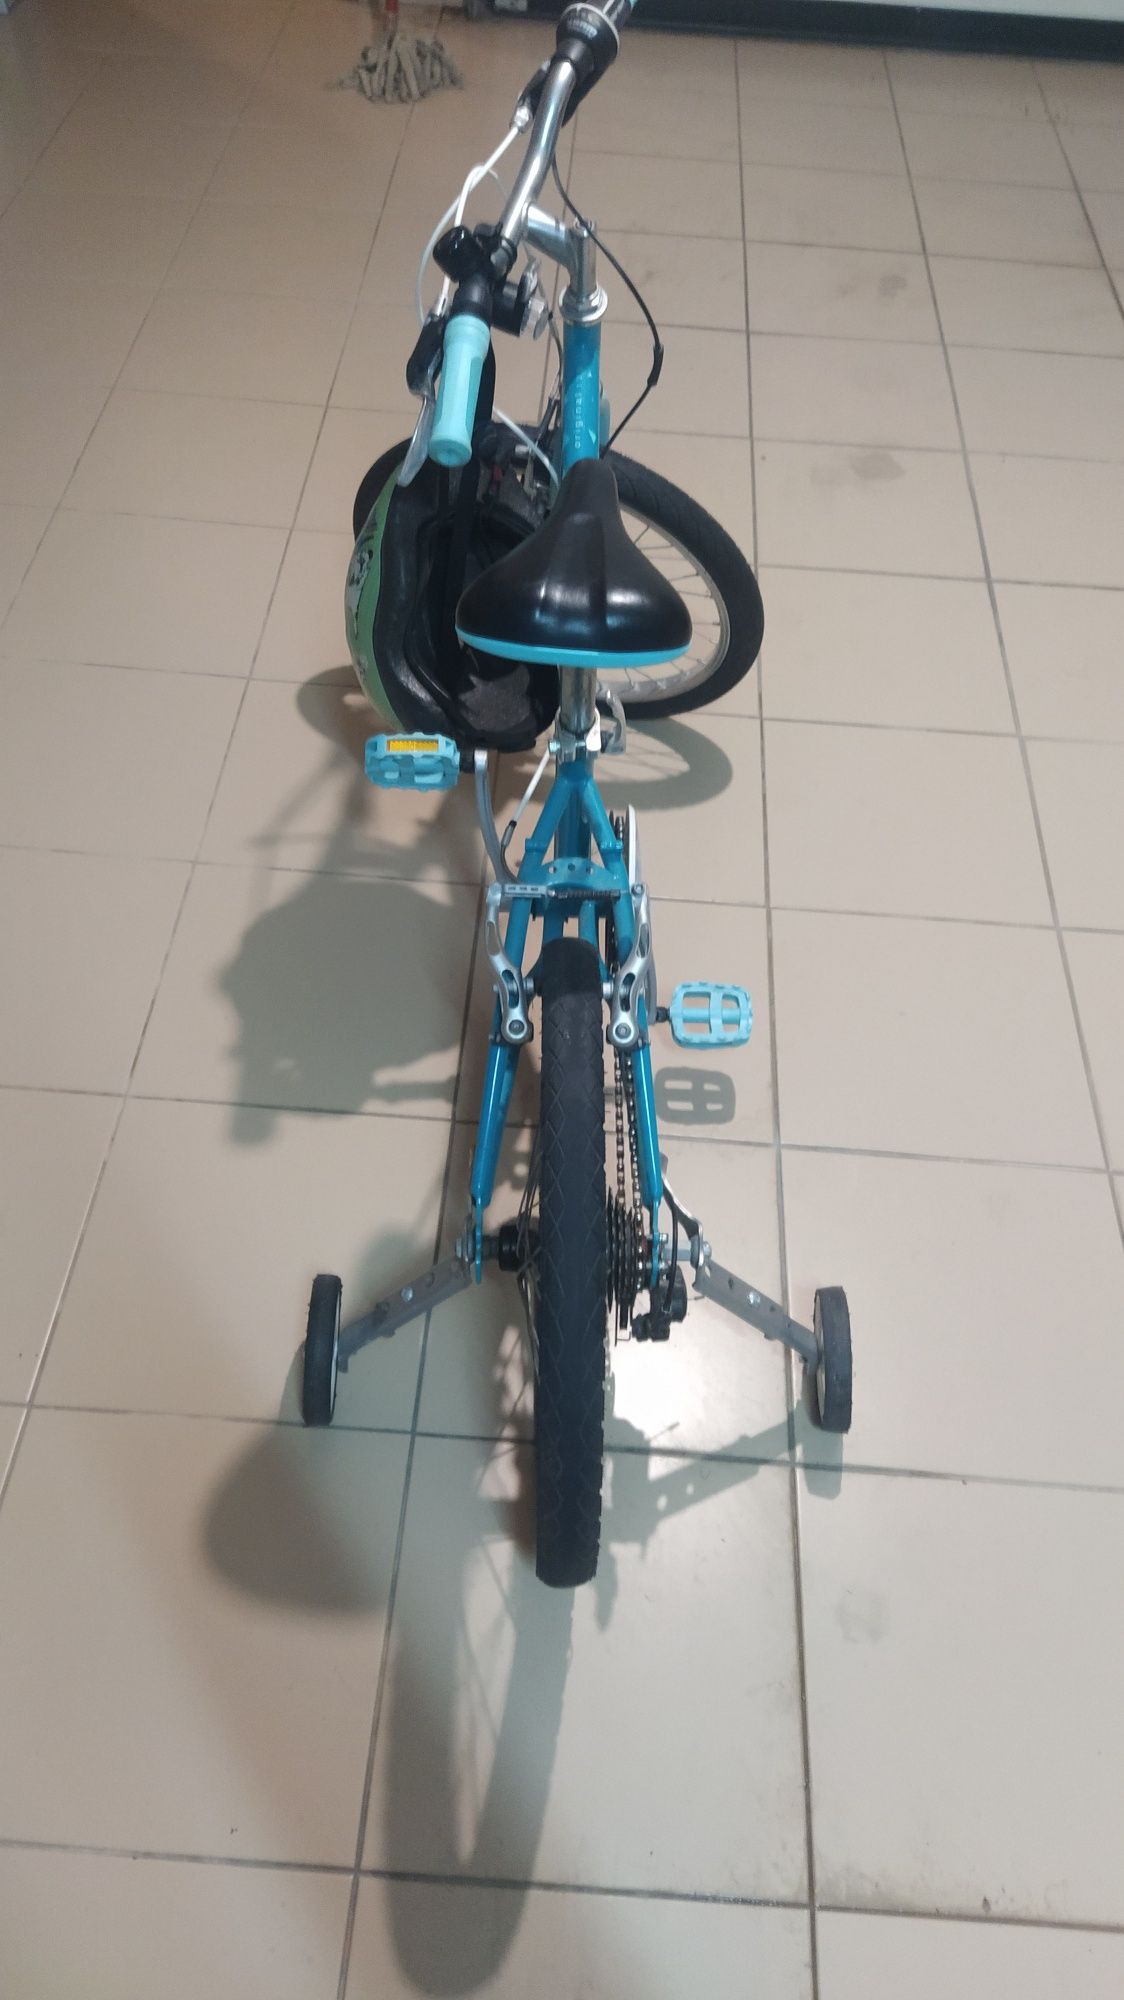 Bicicleta de Criança roda 16